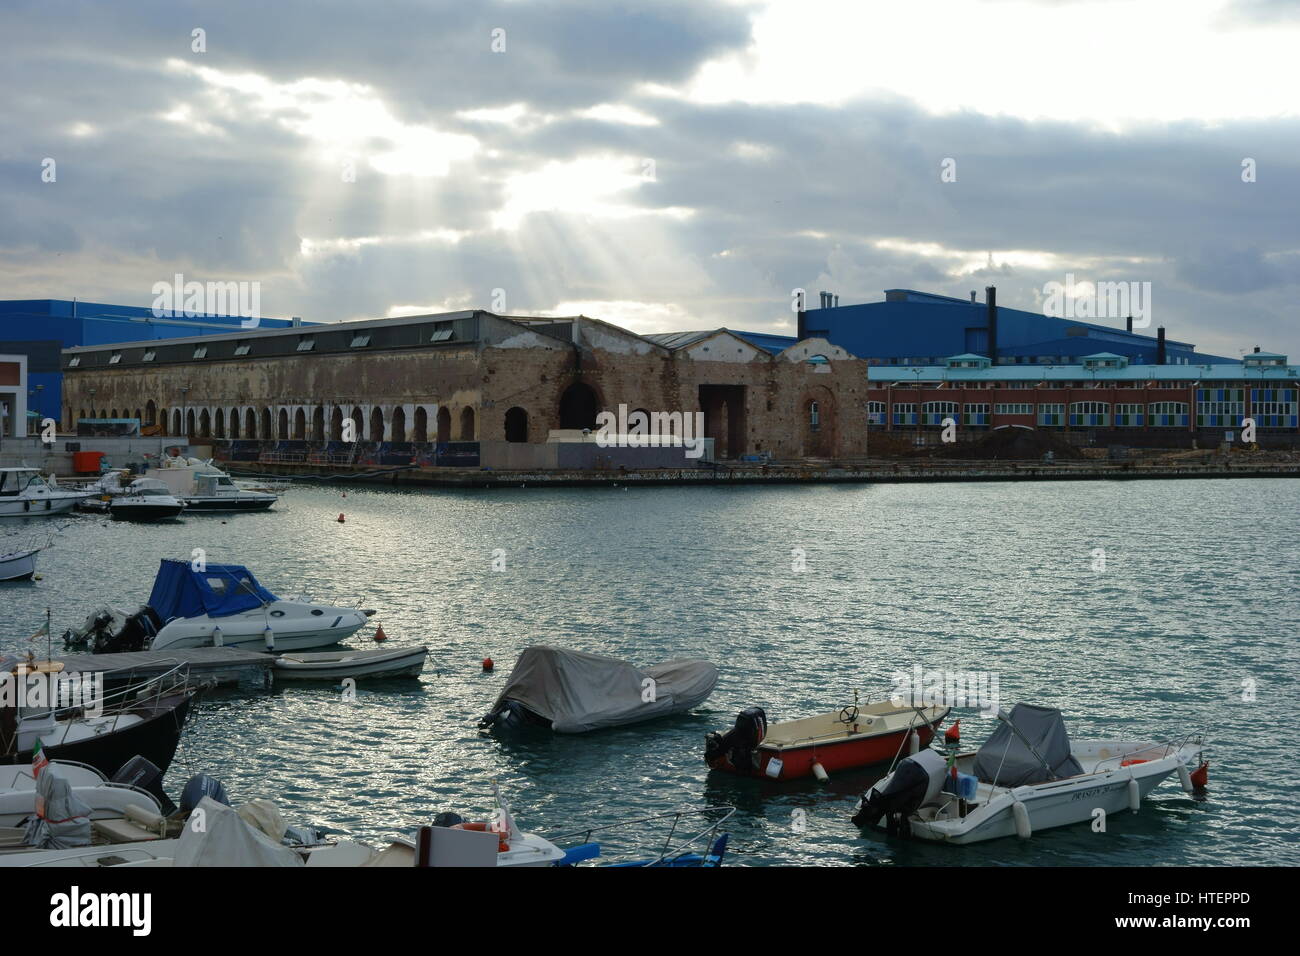 Sunray di luce attraverso le nuvole su edifici industriali - Livorno docks, porto industriale, Toscana, Italia, Europa - paesaggio urbano serie Foto Stock